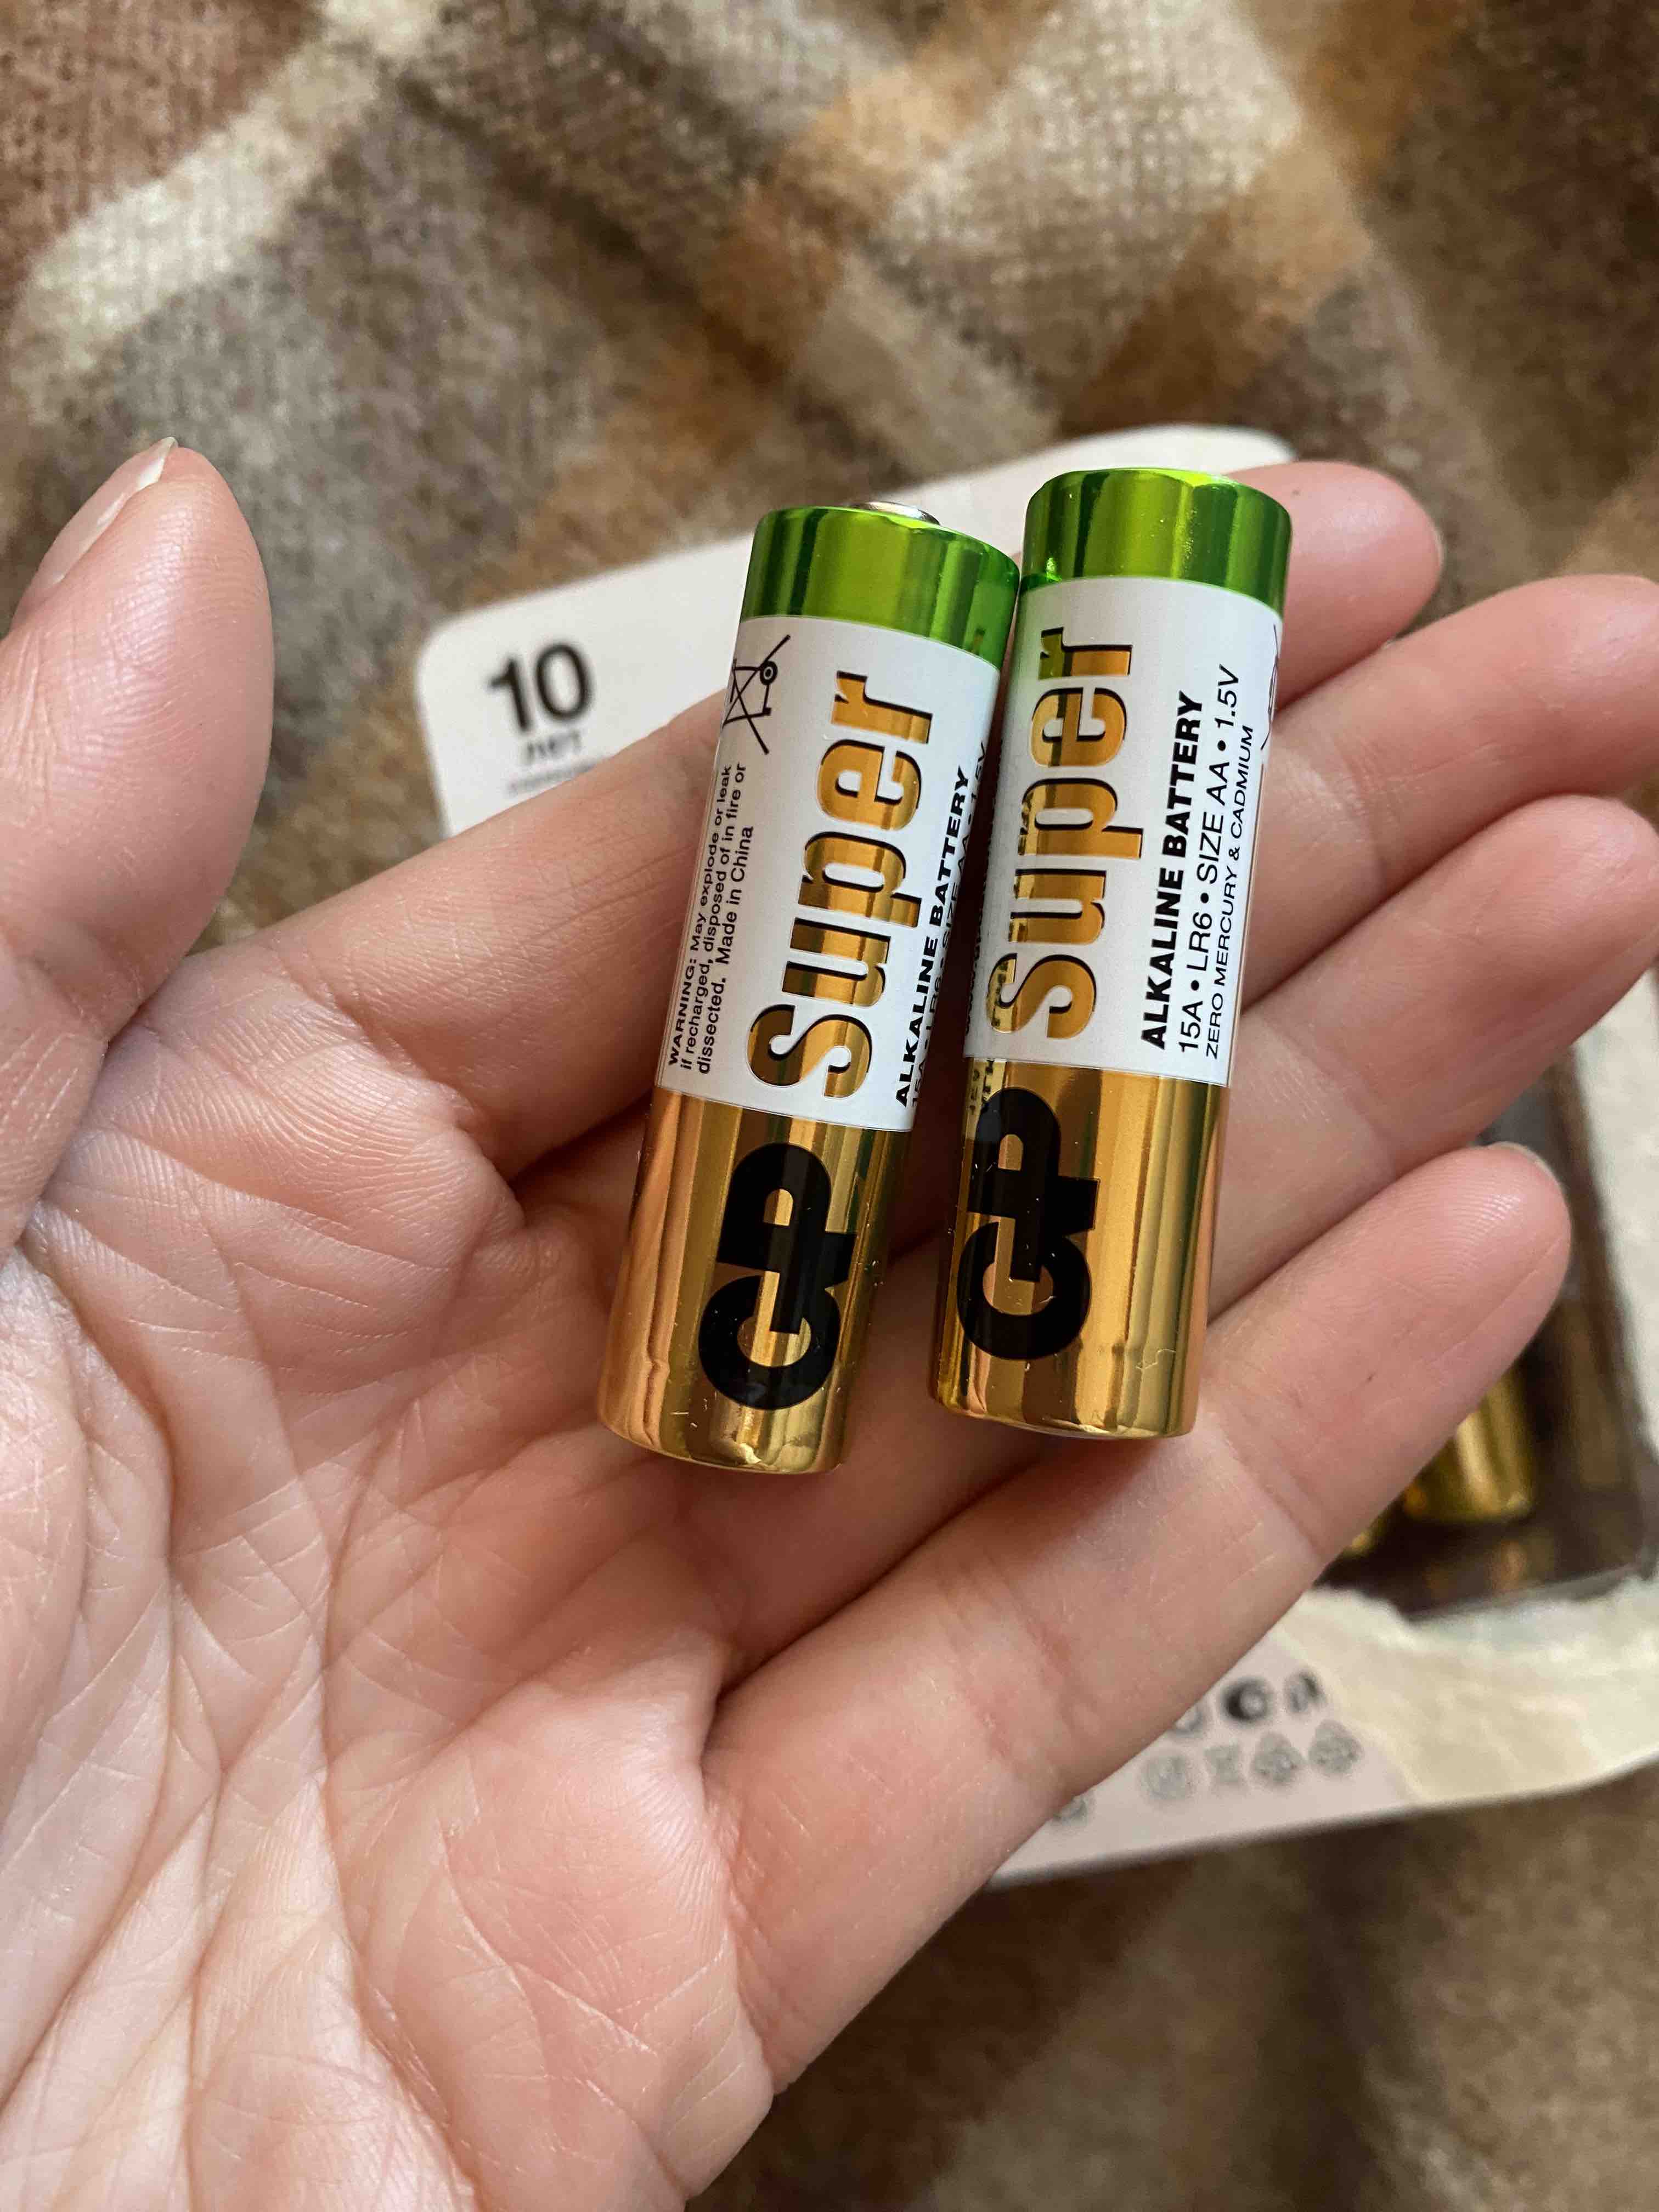 Gp batteries super